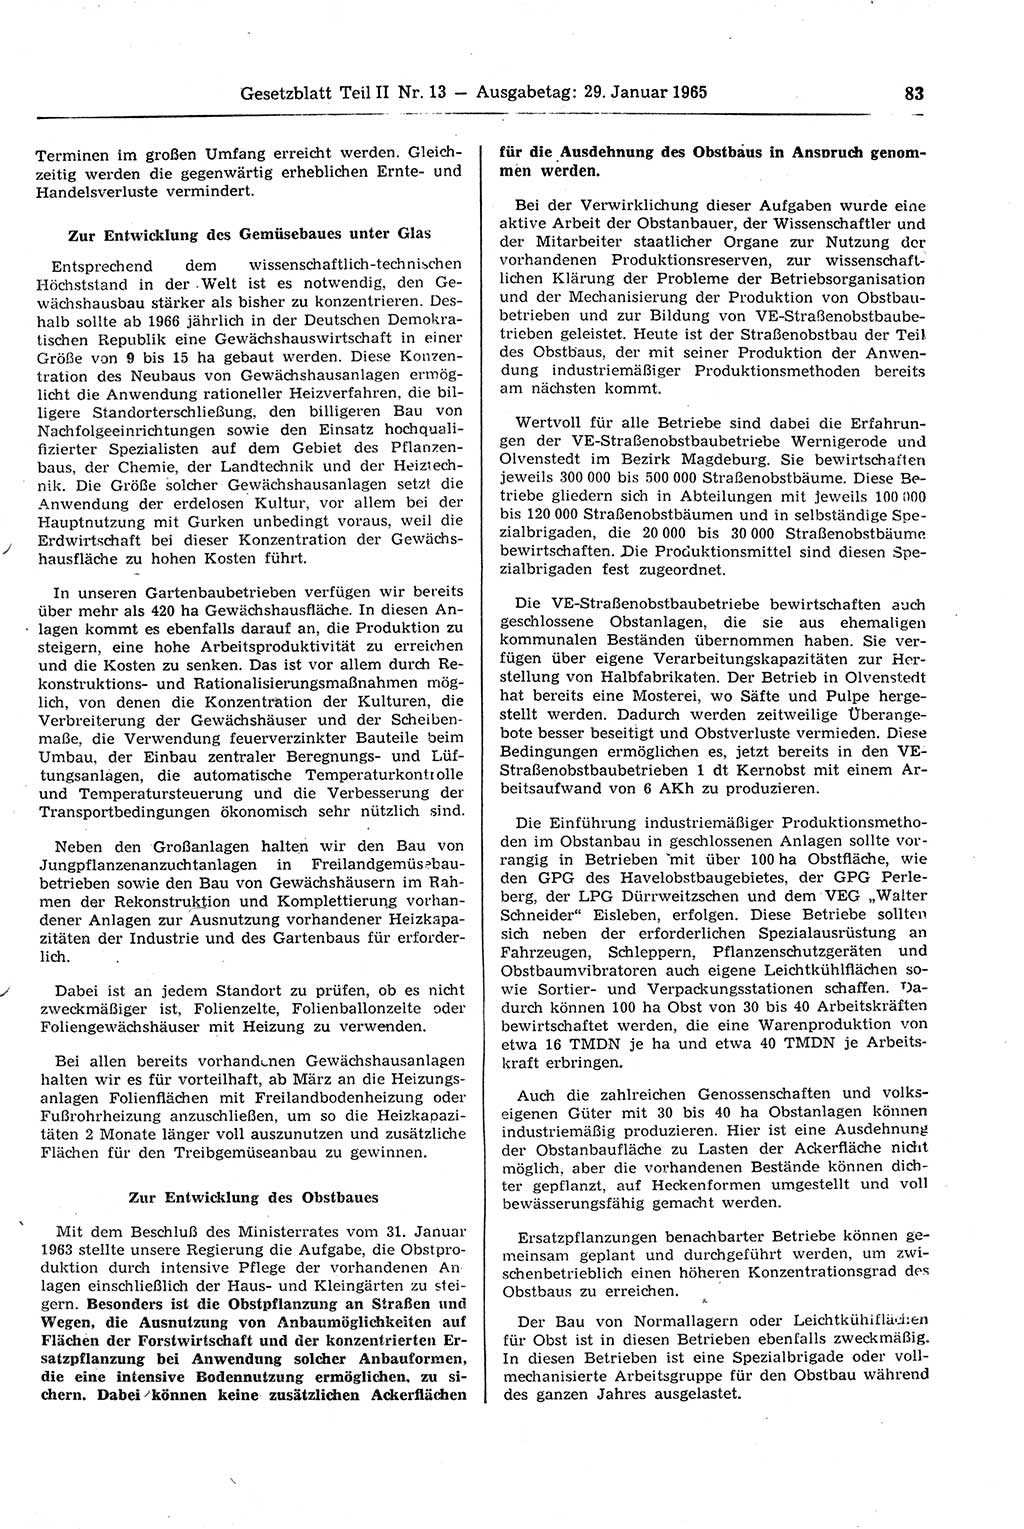 Gesetzblatt (GBl.) der Deutschen Demokratischen Republik (DDR) Teil ⅠⅠ 1965, Seite 83 (GBl. DDR ⅠⅠ 1965, S. 83)